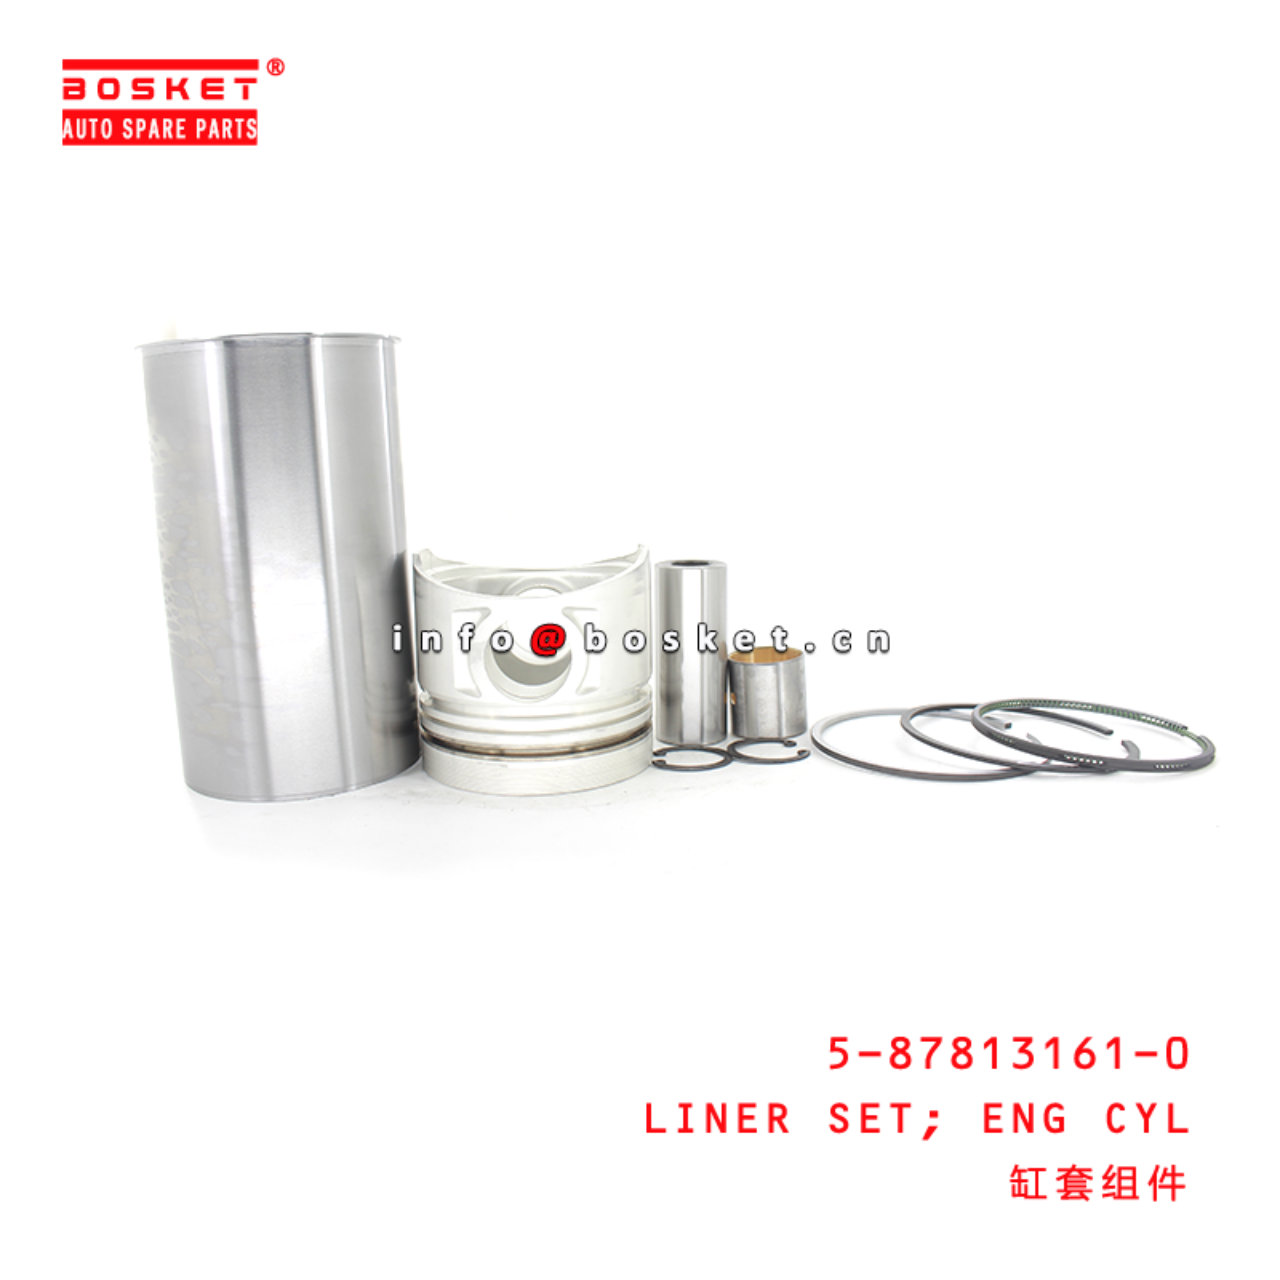 5-87813161-0 Engine Cylinder Liner Set Suitable for ISUZU NPR58 5878131610